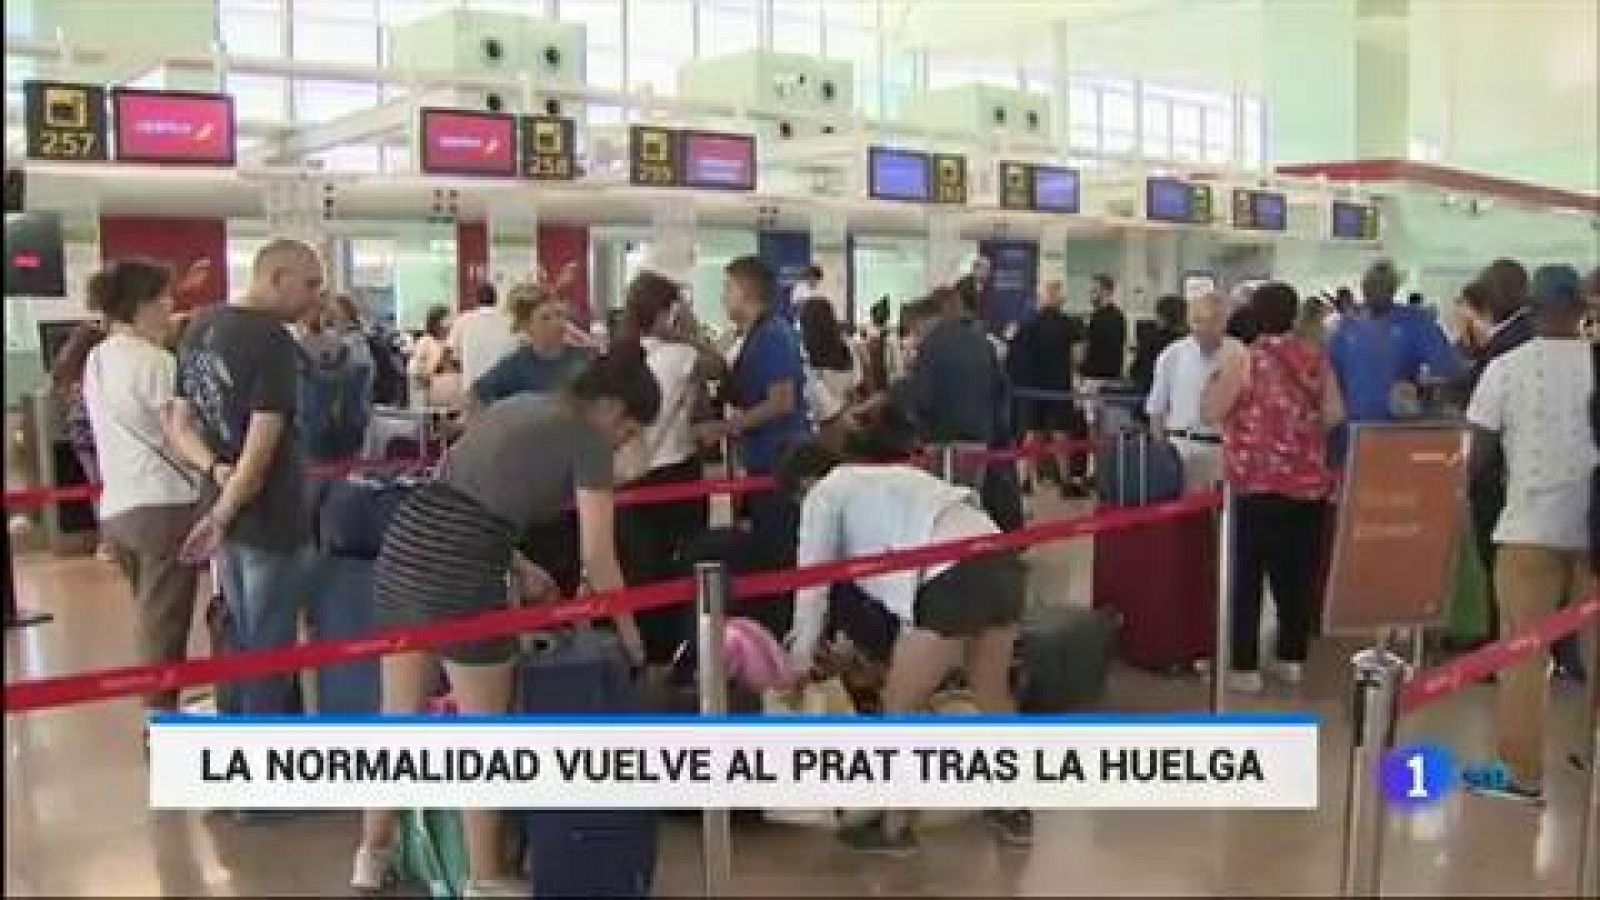 Huelga en El Prat: Los vuelos operan con normalidad en El Prat tras la huelga pero las consecuencias se siguen notando